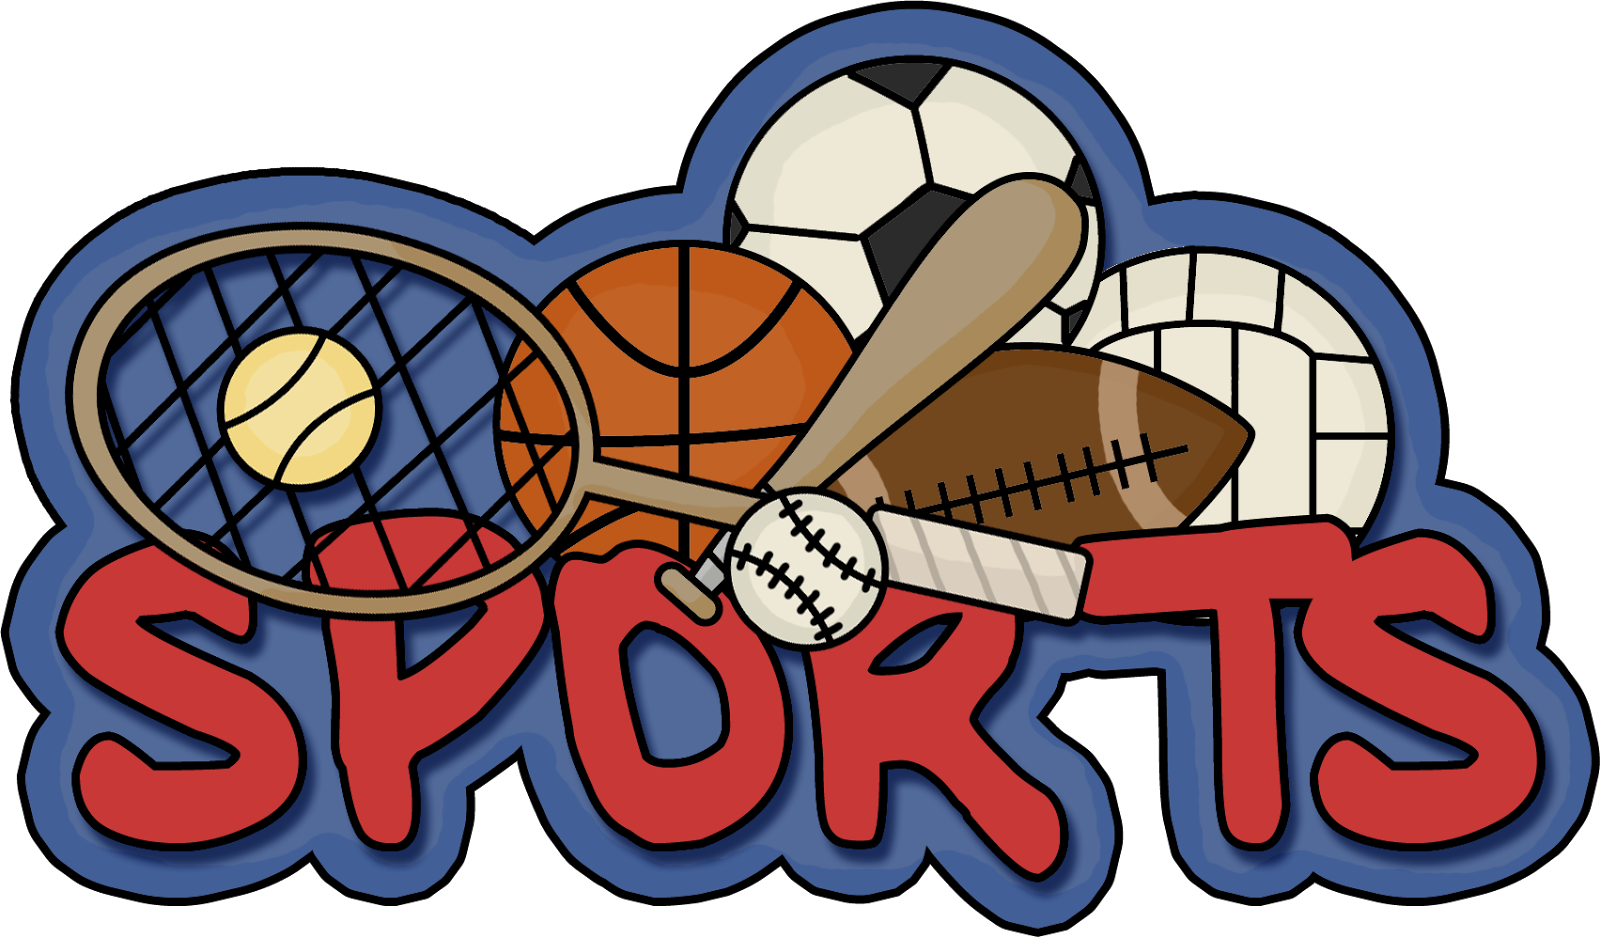 Sports and games we. Спортивные логотипы. Эмблемы спортивных товаров. Спорт слово. Спорт надпись.